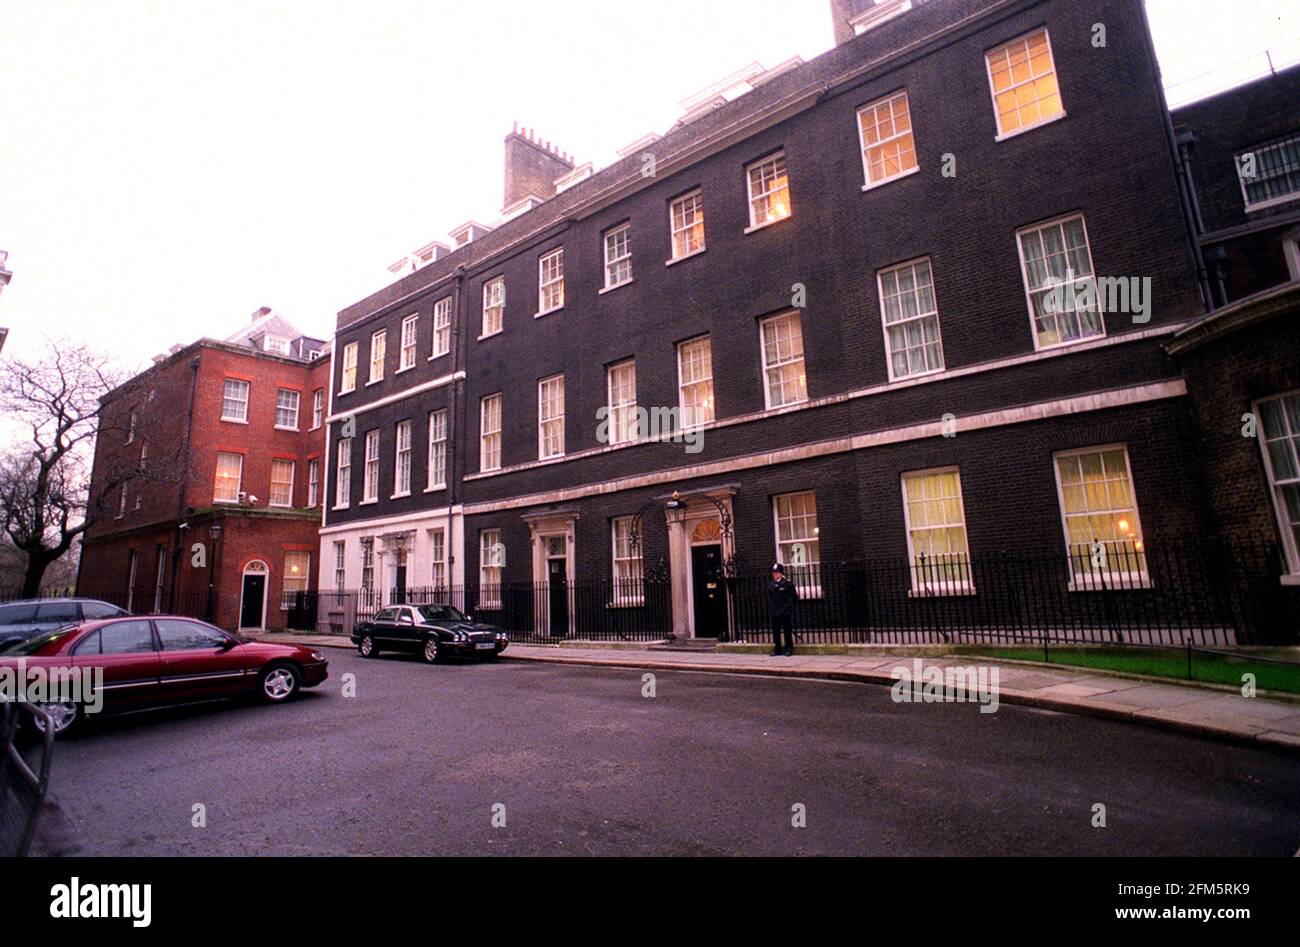 Downing Street Mars 2001 gauche à droite brique rouge no 12 n° 11 la maison du chancelier de l'échiquier Et no 10 Downing Street la maison officielle de la Premier ministre Banque D'Images